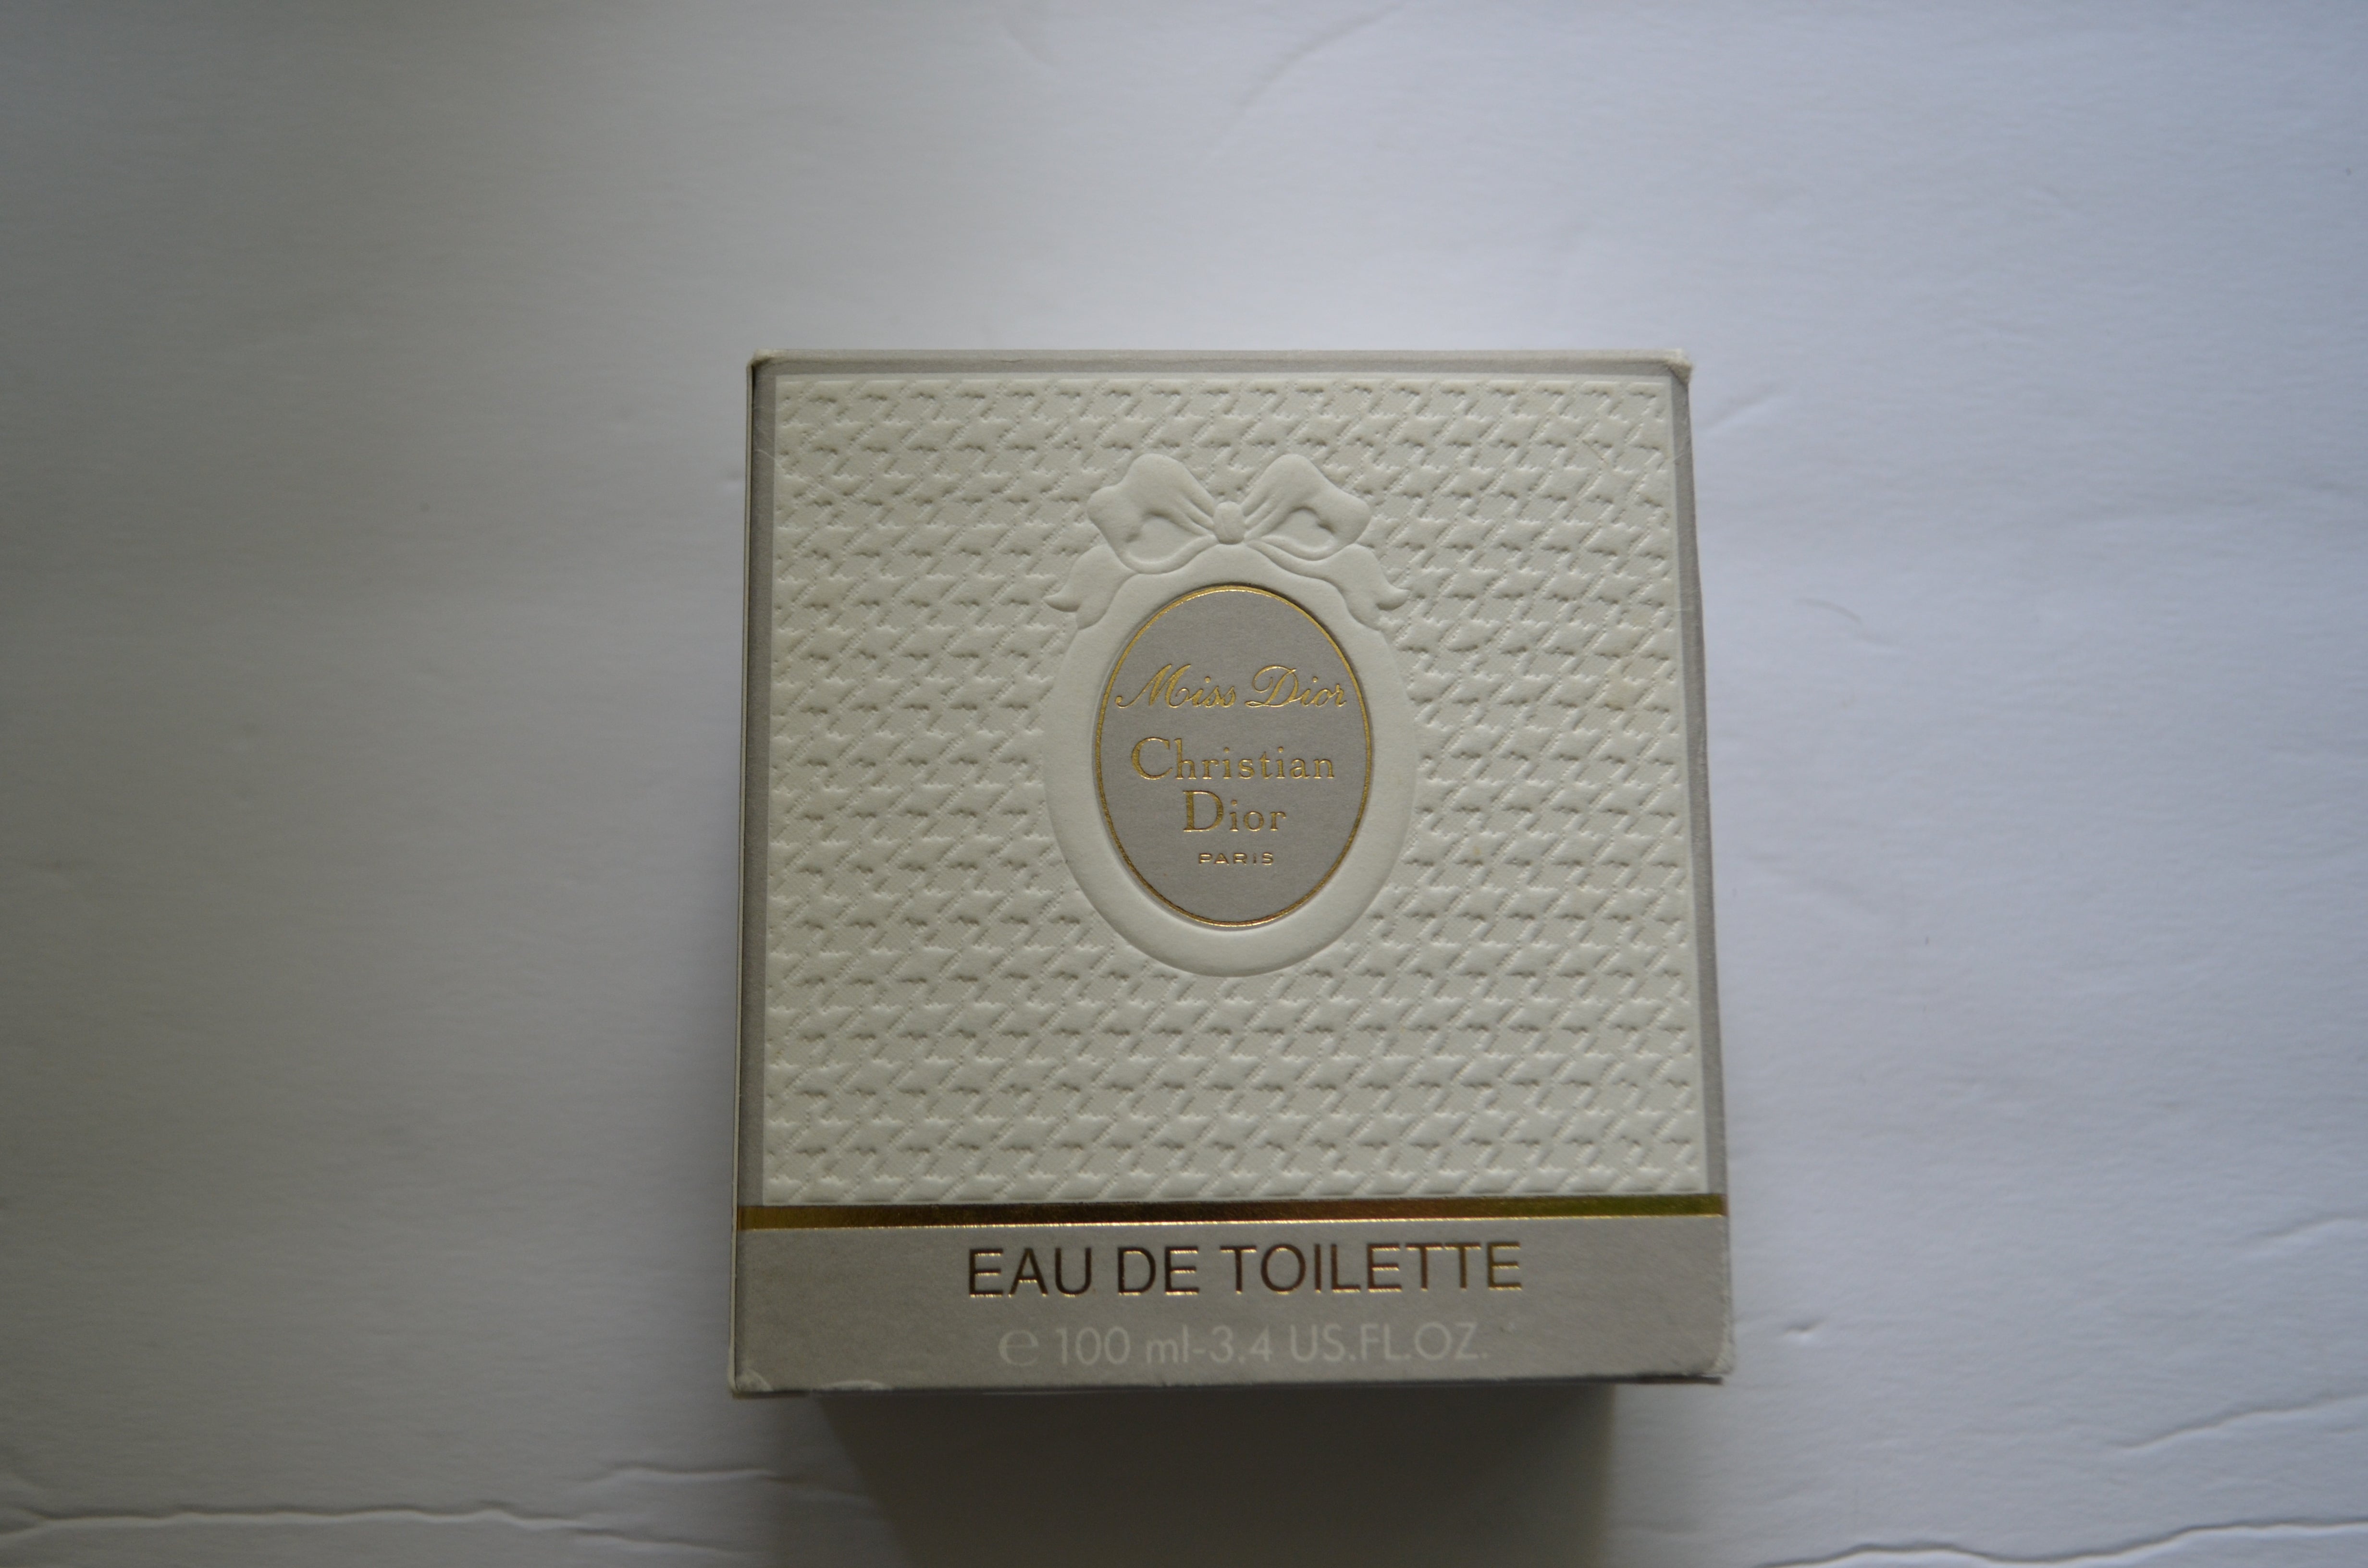 Vintage Miss Dior Eau de Toilette by Christian Dior Paris Splash 3.4 oz NEW in the box